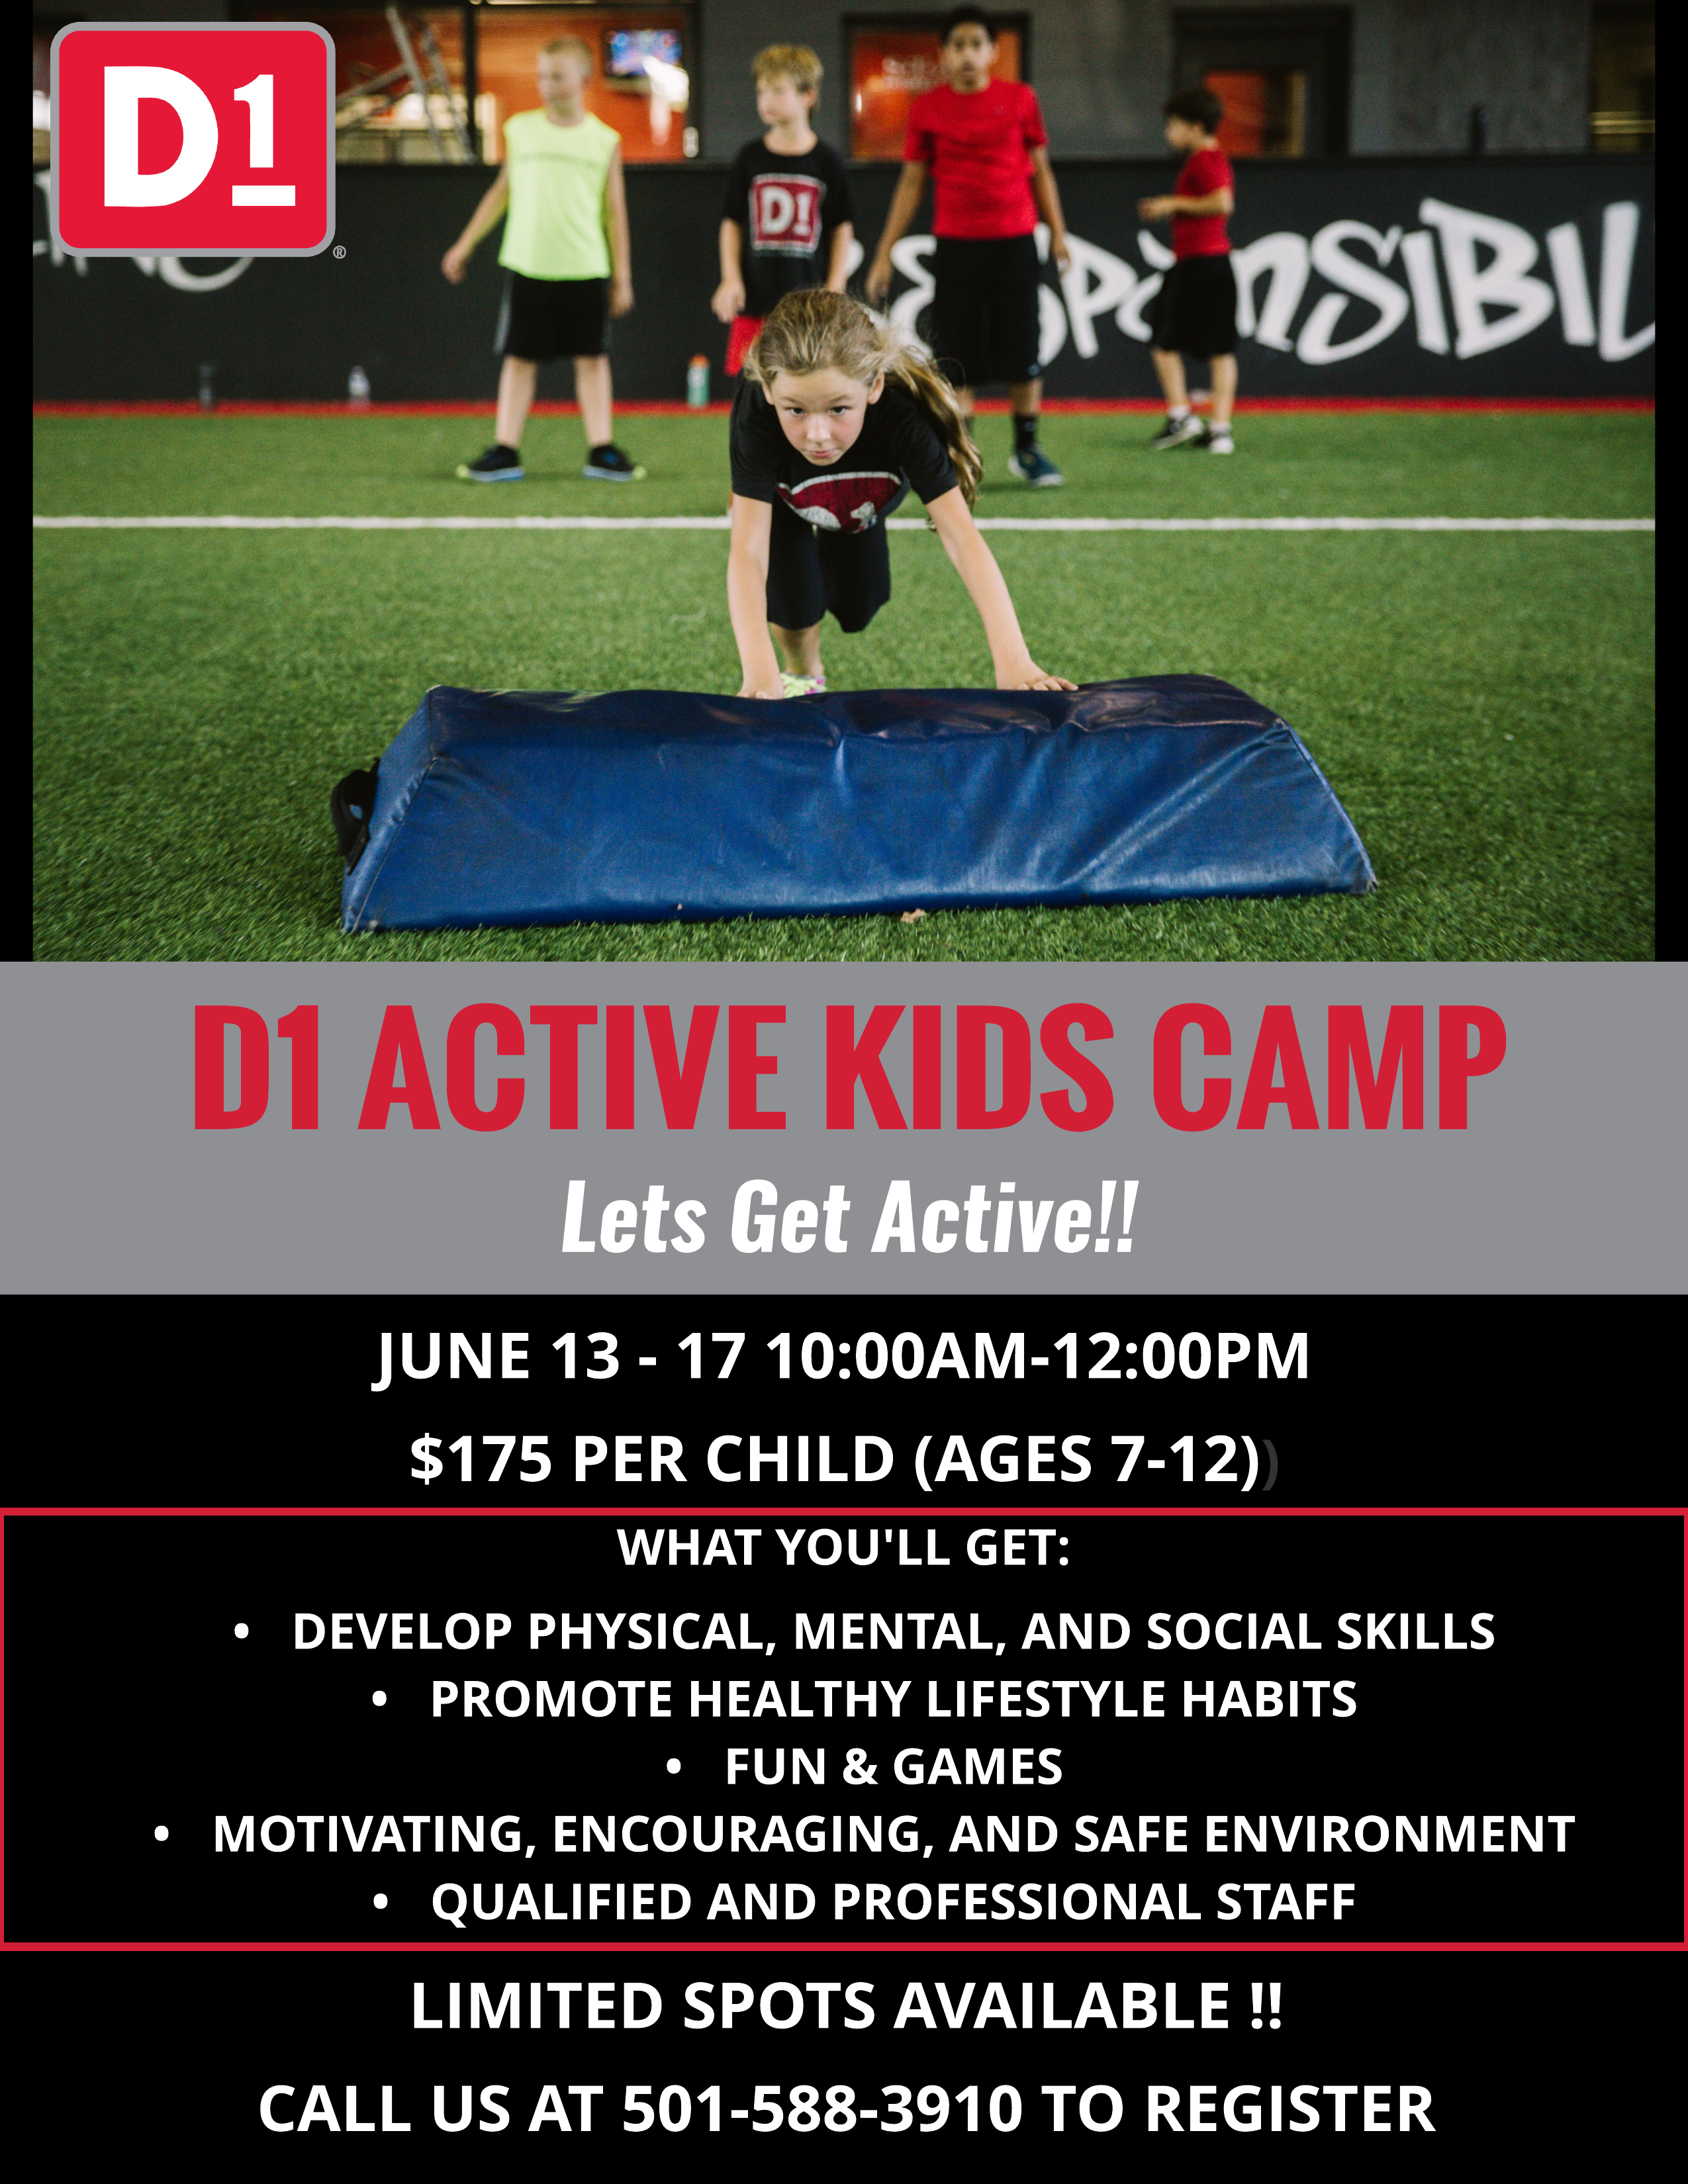 D1 Active Kids Camp - Let's Get Active!!